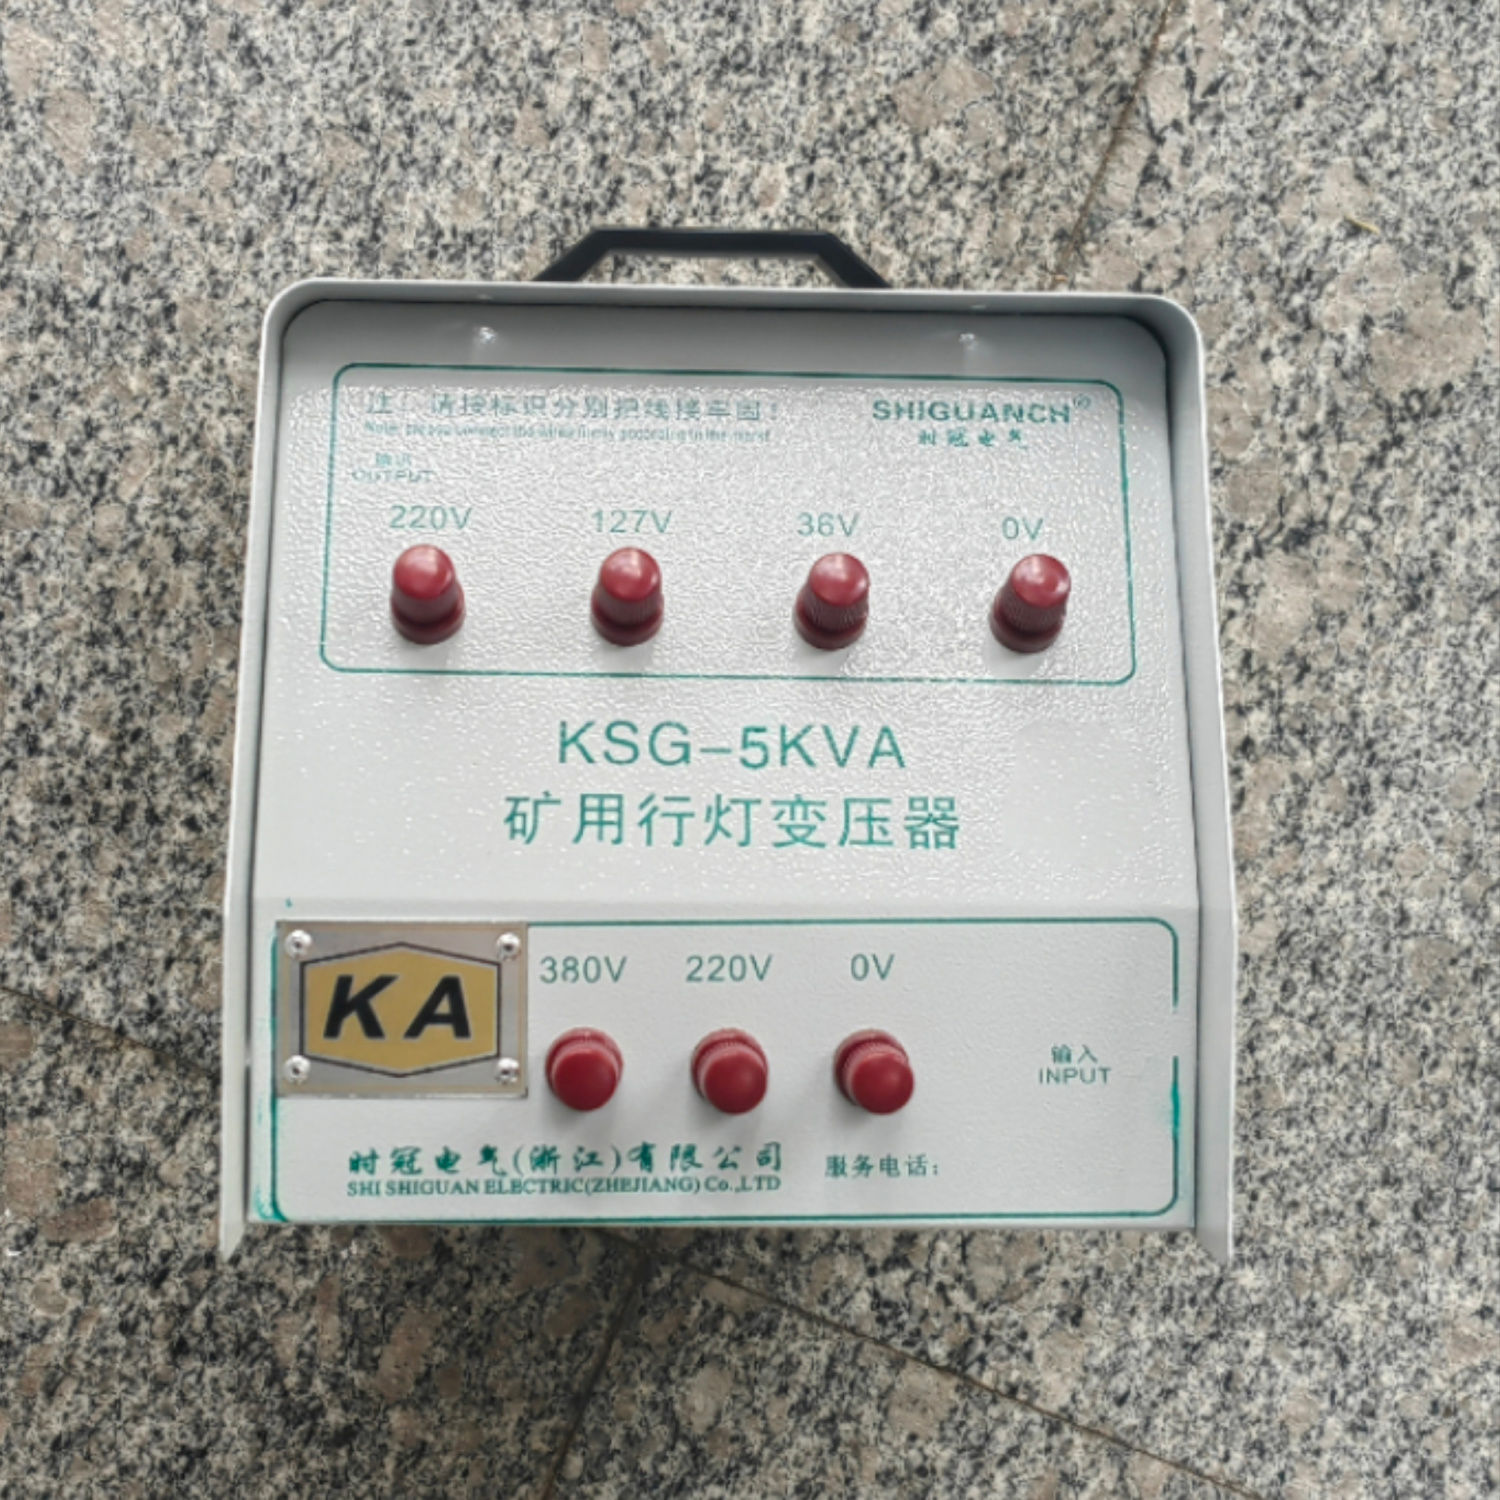 KSG-5KVA矿用行灯变压器生产厂家-厂家报价-厂家供应-哪里有-哪里好 南京矿用行灯变压器厂家